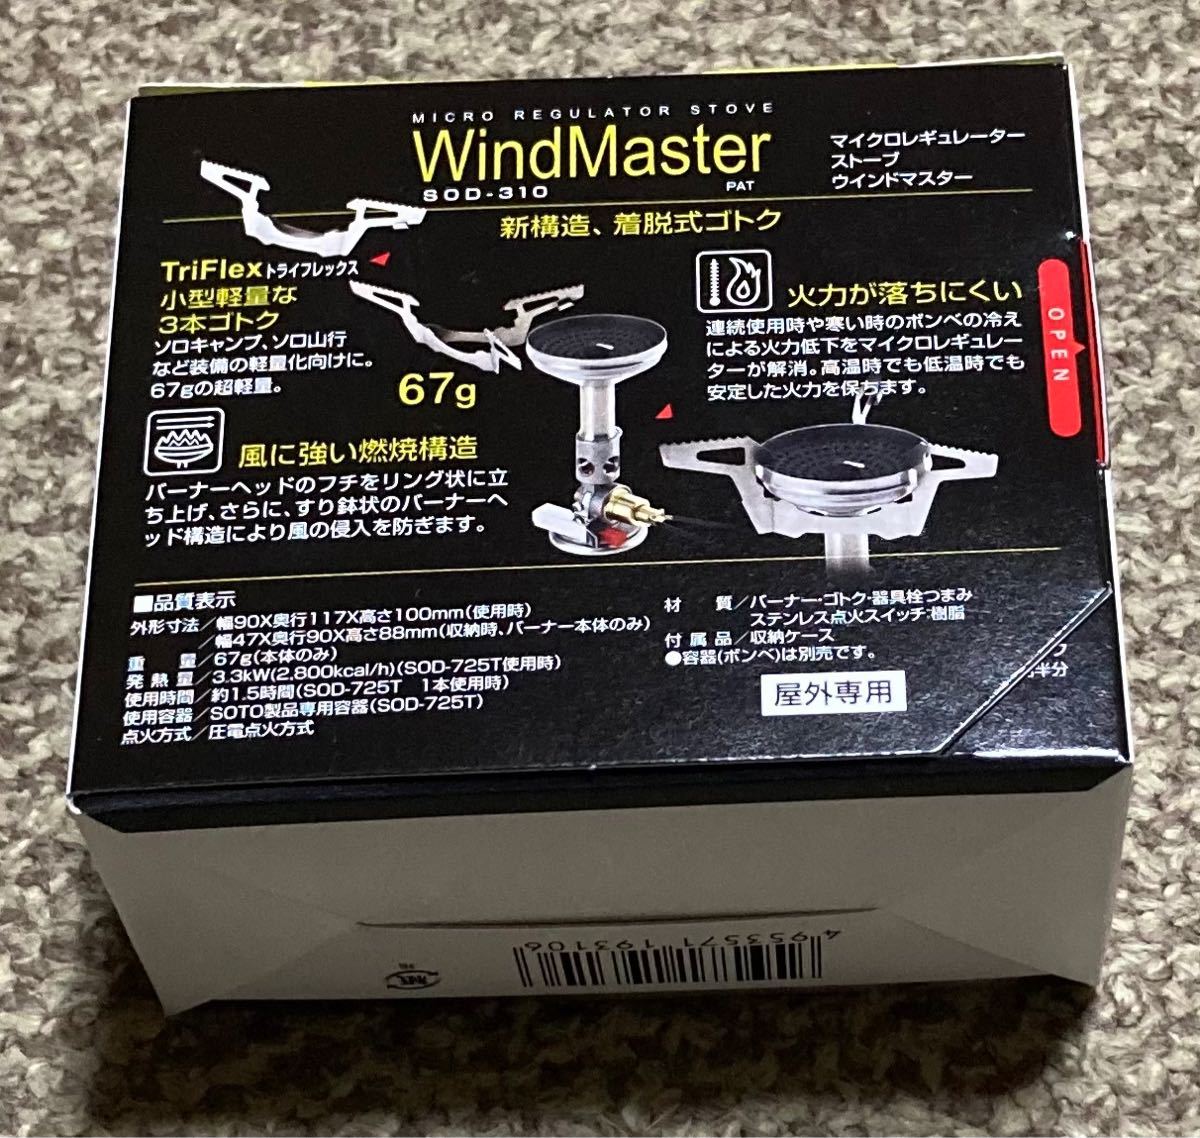 SOTO ウインドマスター SOD-310 マイクロレギュレーターストーブ 新富士バーナー